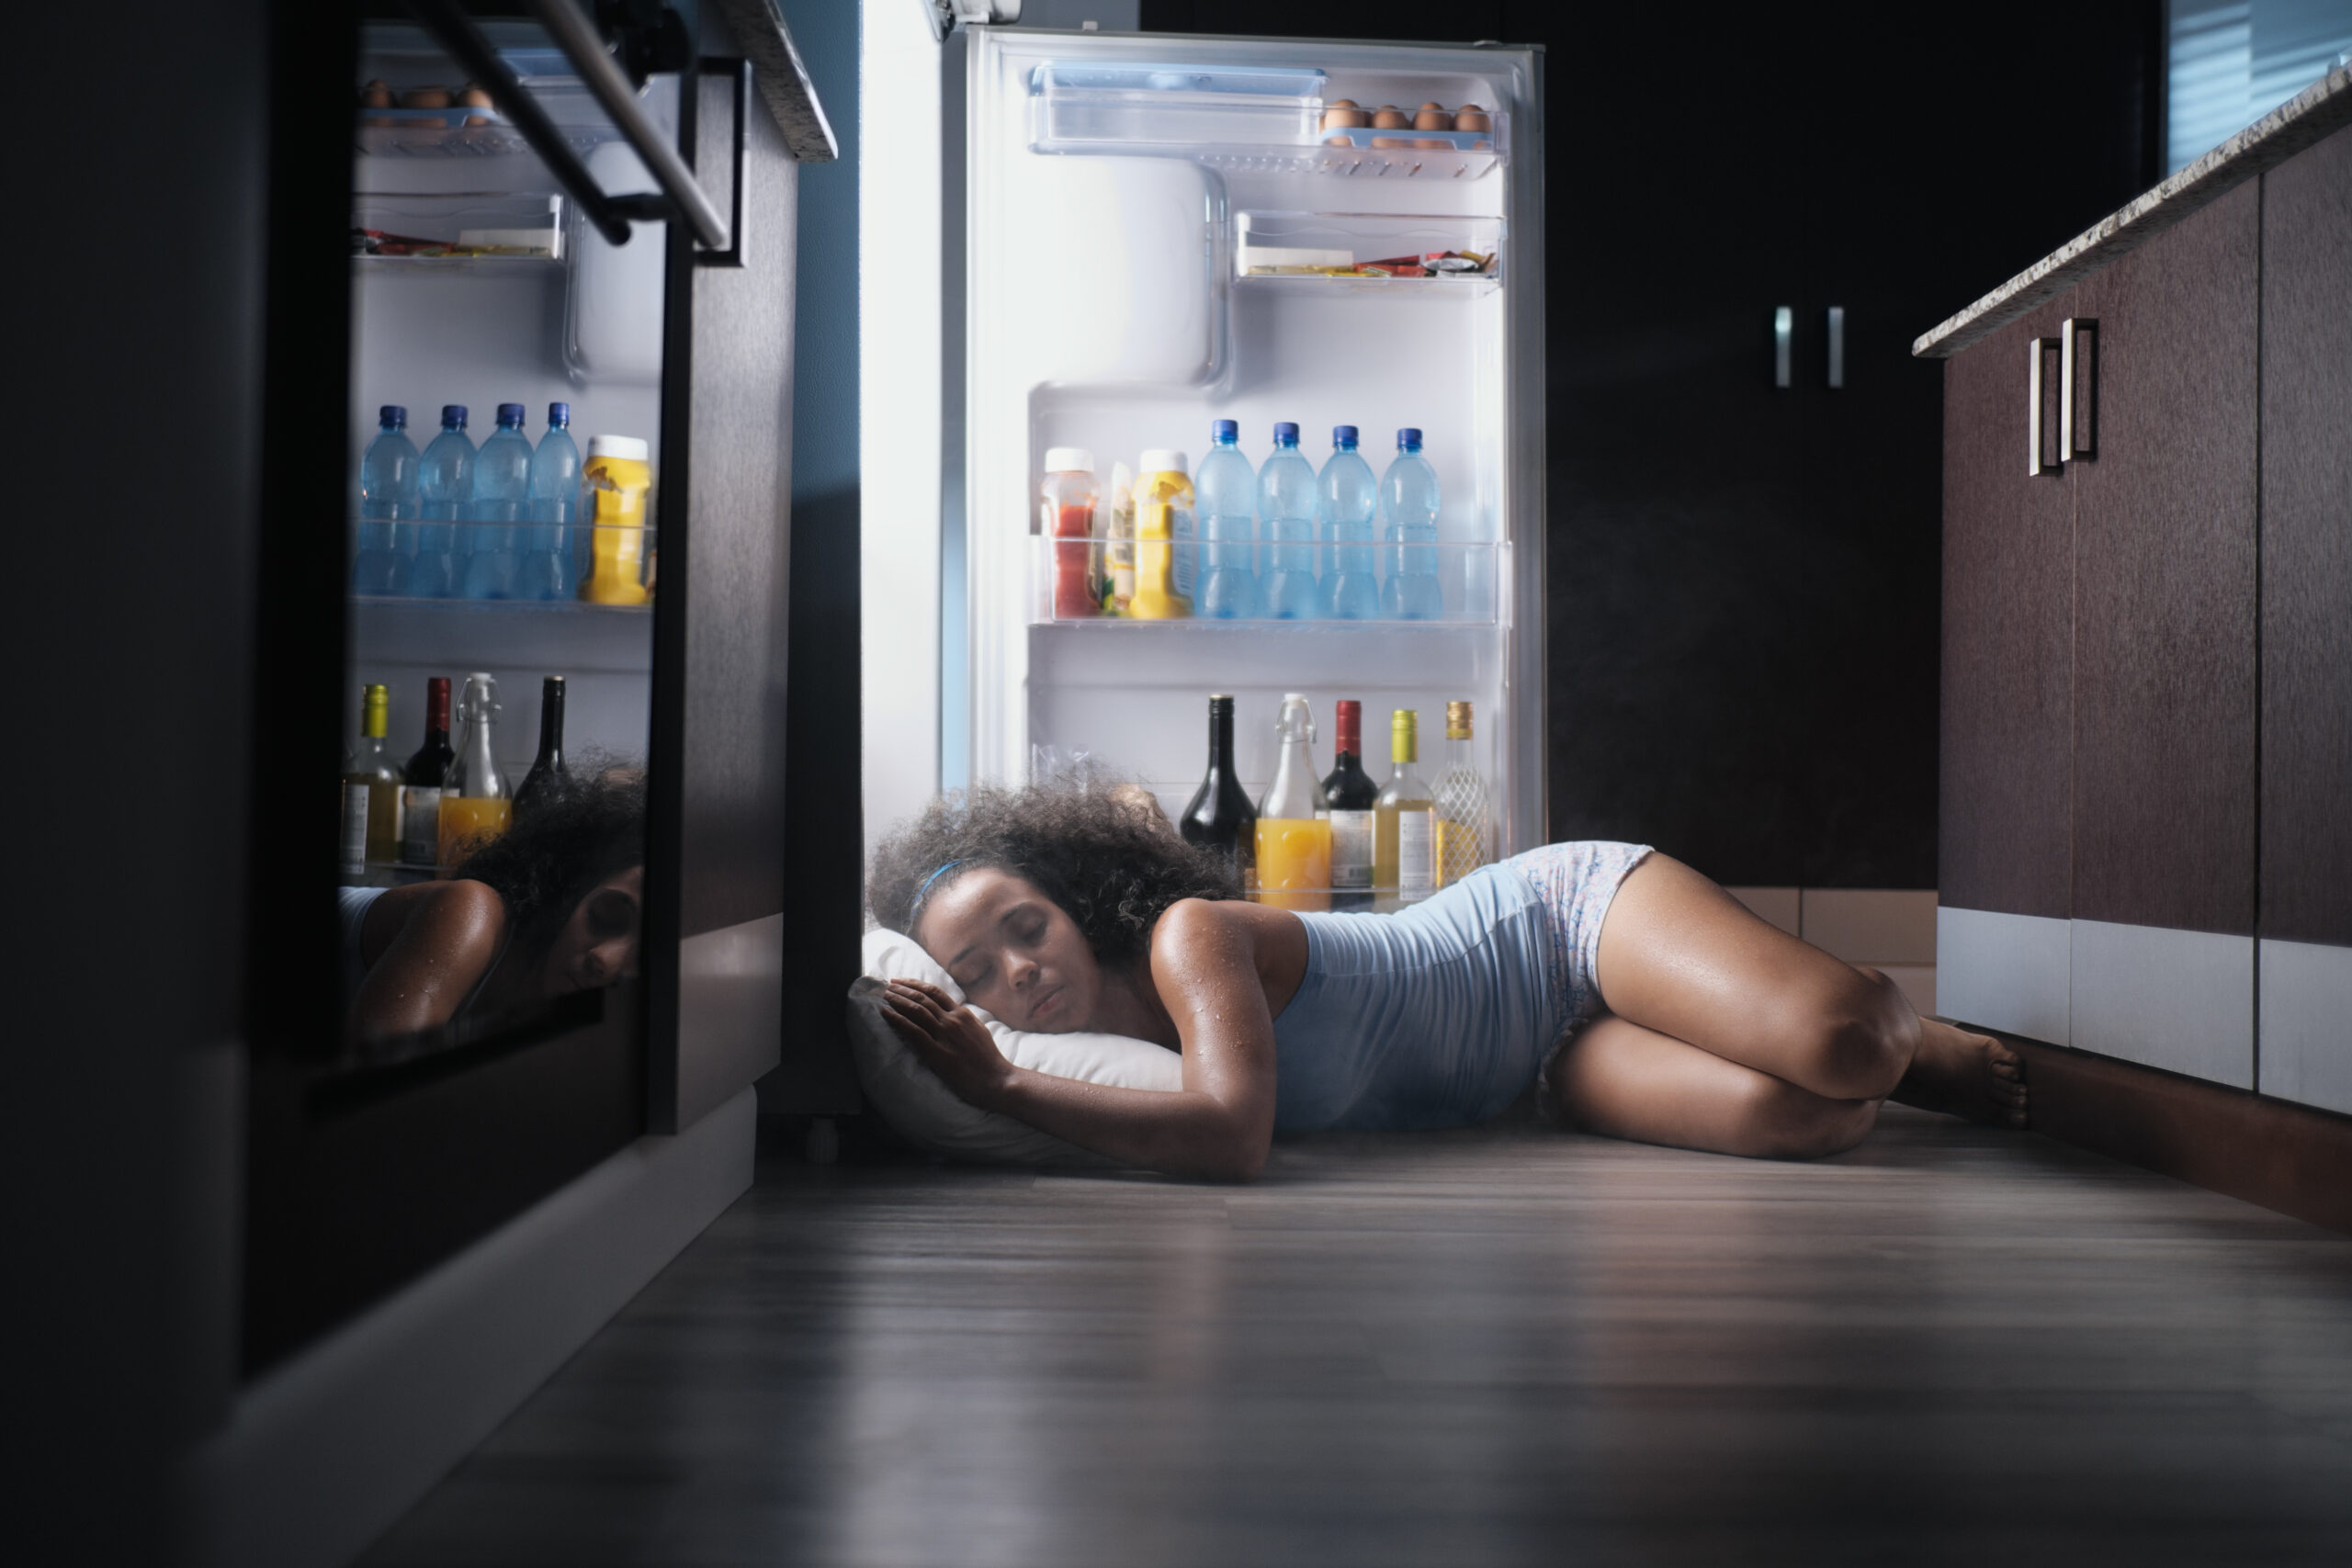 vrouw ligt met hoofd in koelkast